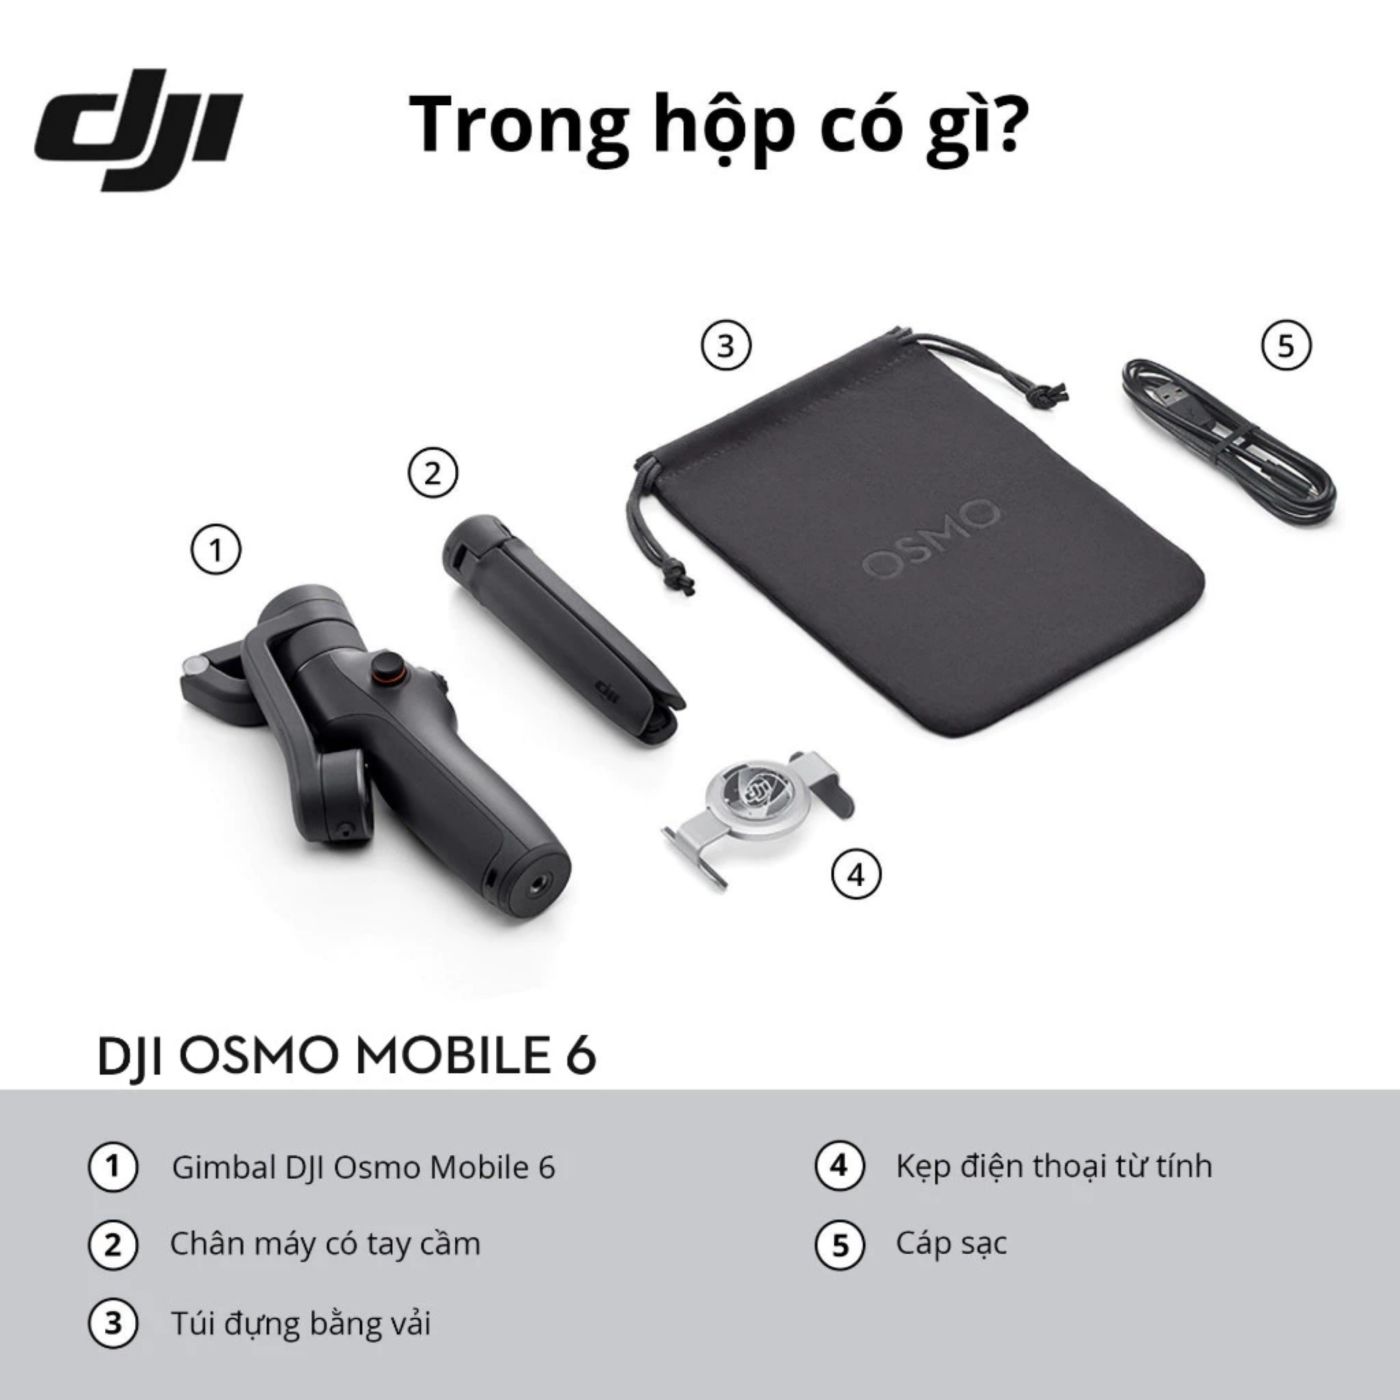 Gimbal chống rung điện thoại DJI Osmo Mobile 6 có thể kéo dài (DJI OM 6)